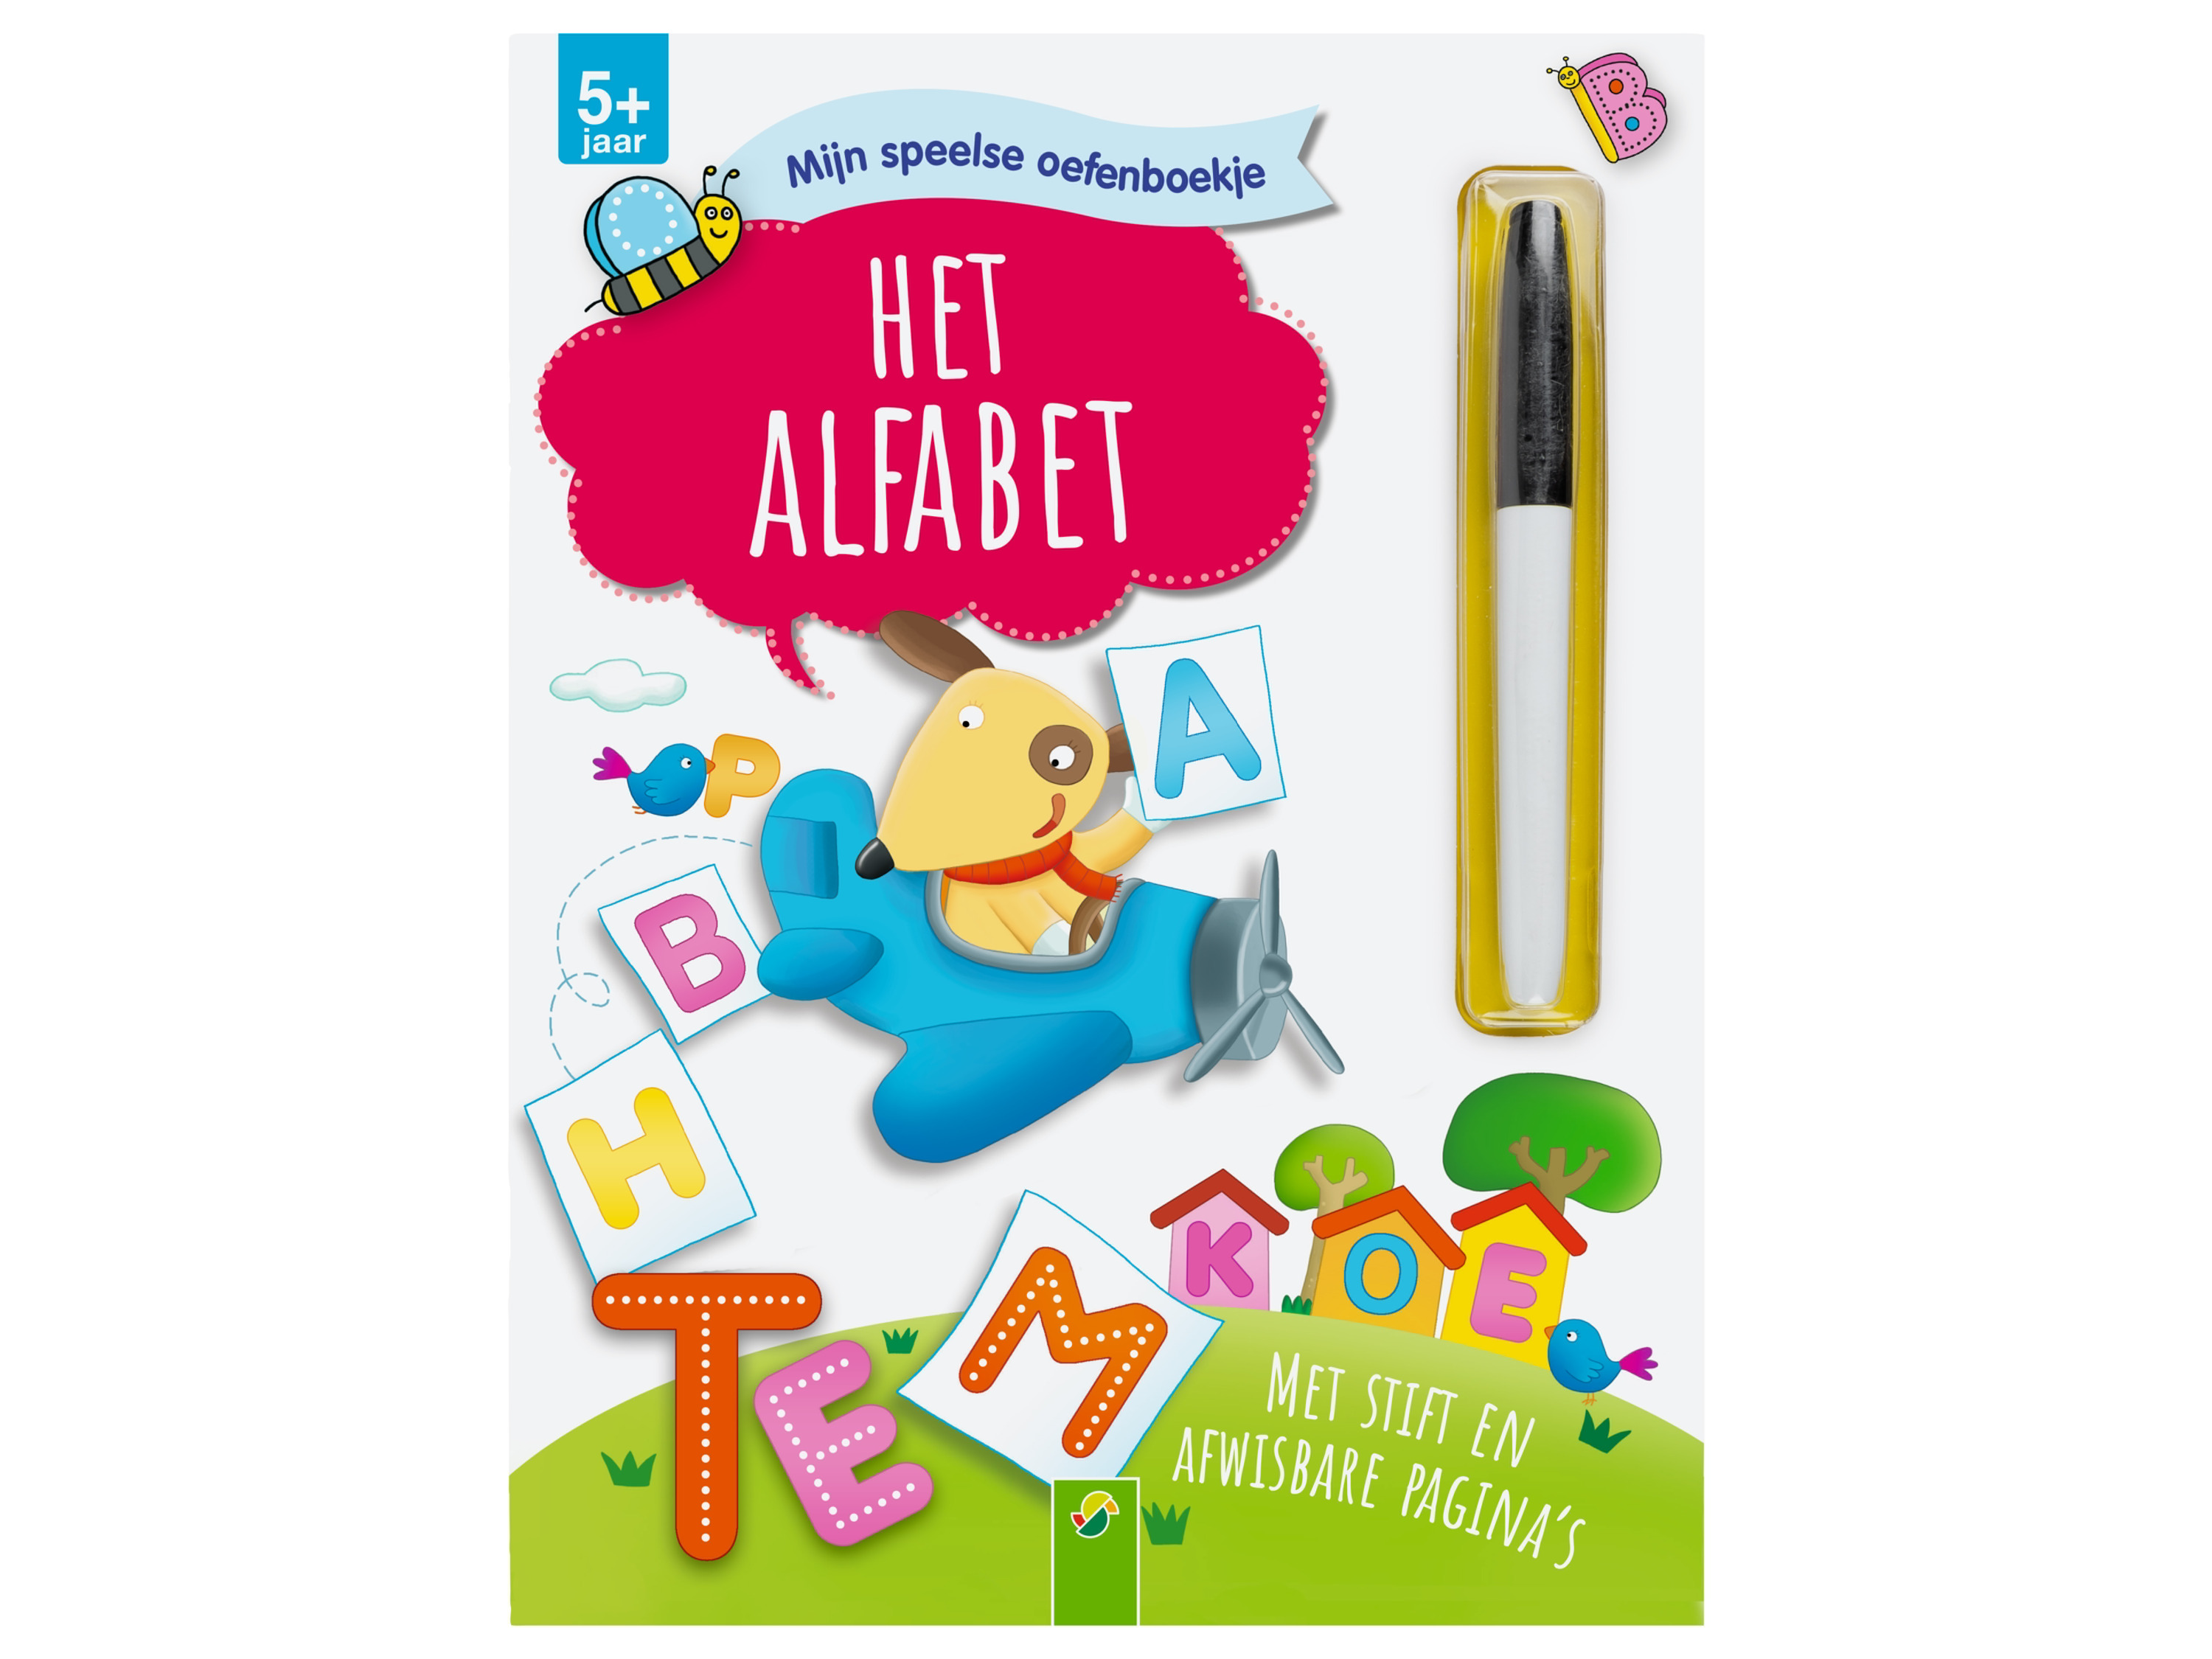 Leerspelletjesboekje (Het alfabet)